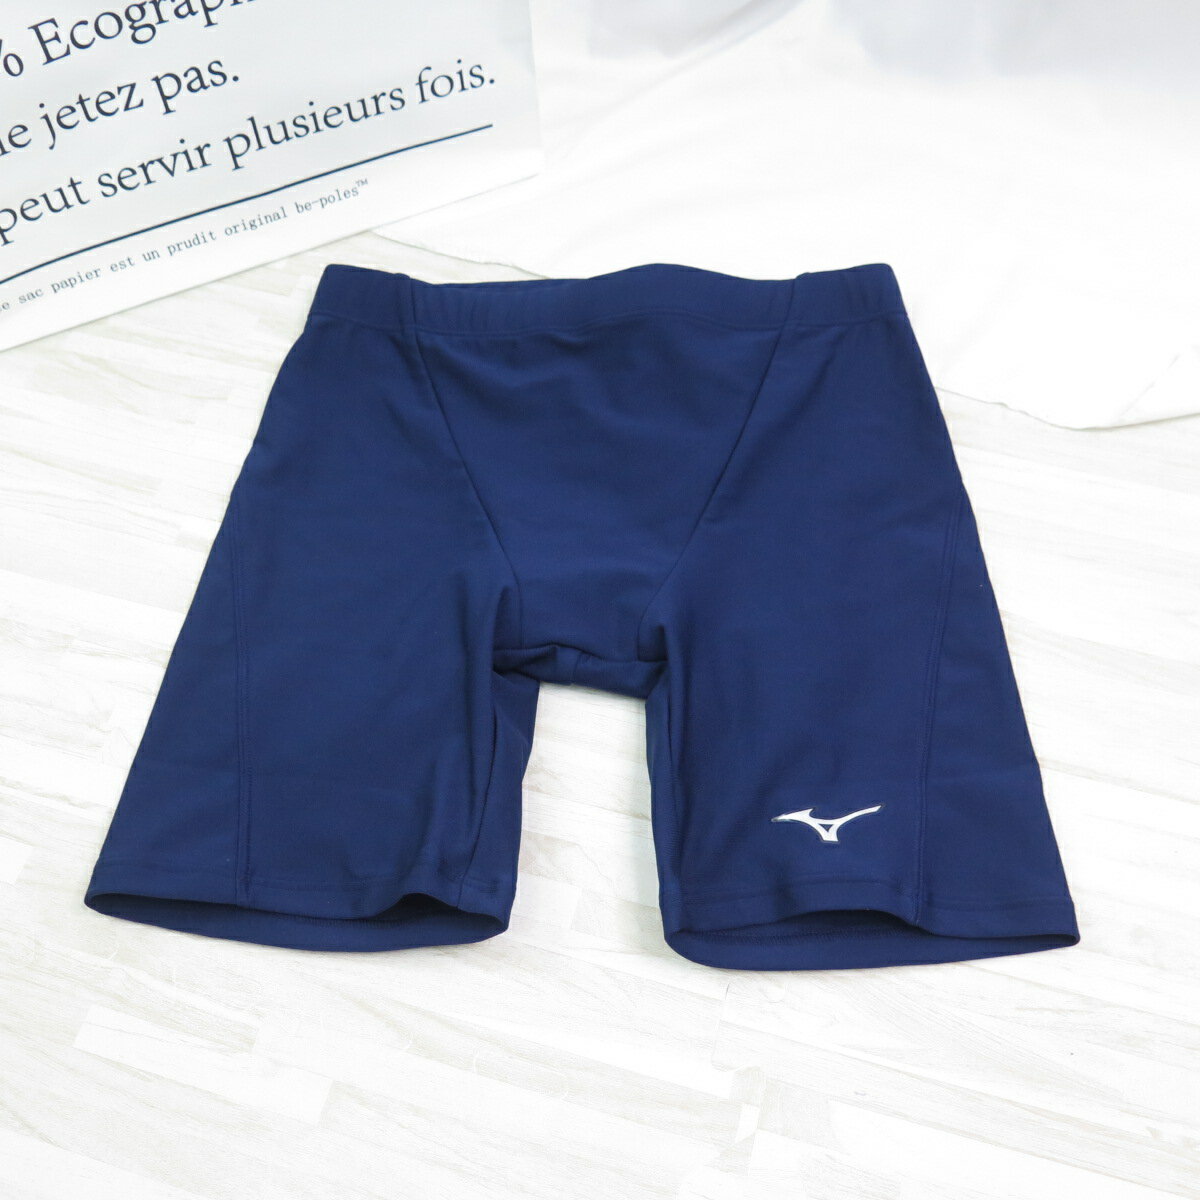 MIZUNO 男款 BASIC 四角泳褲 素色泳褲 N2MB1A01- 藍色 黑色【iSport愛運動】